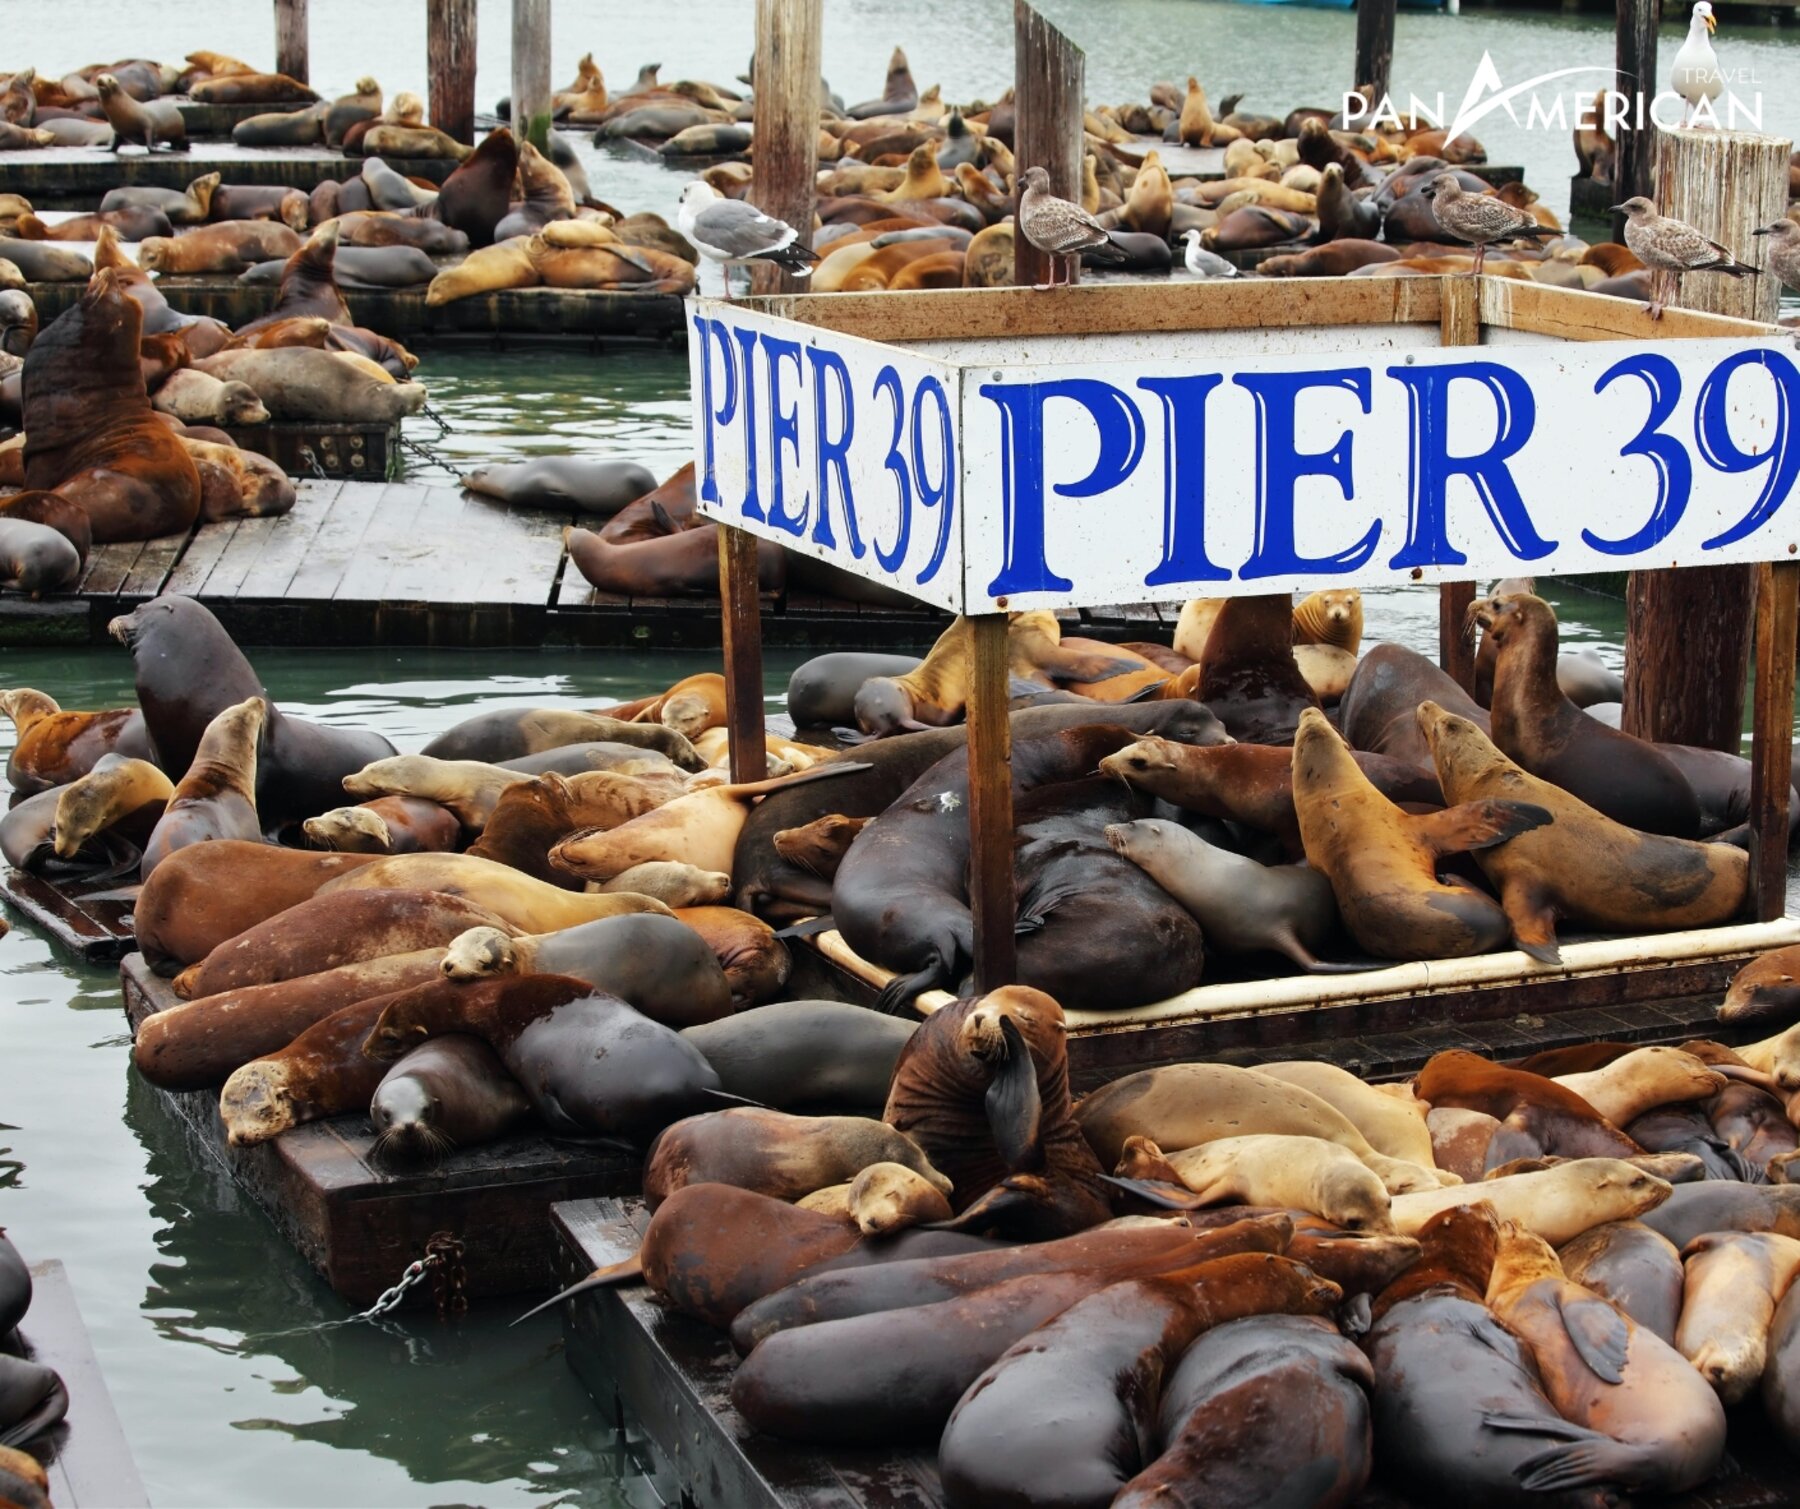 Hàng trăm chú sư tử biển nằm dài trên cảng Pier 39 